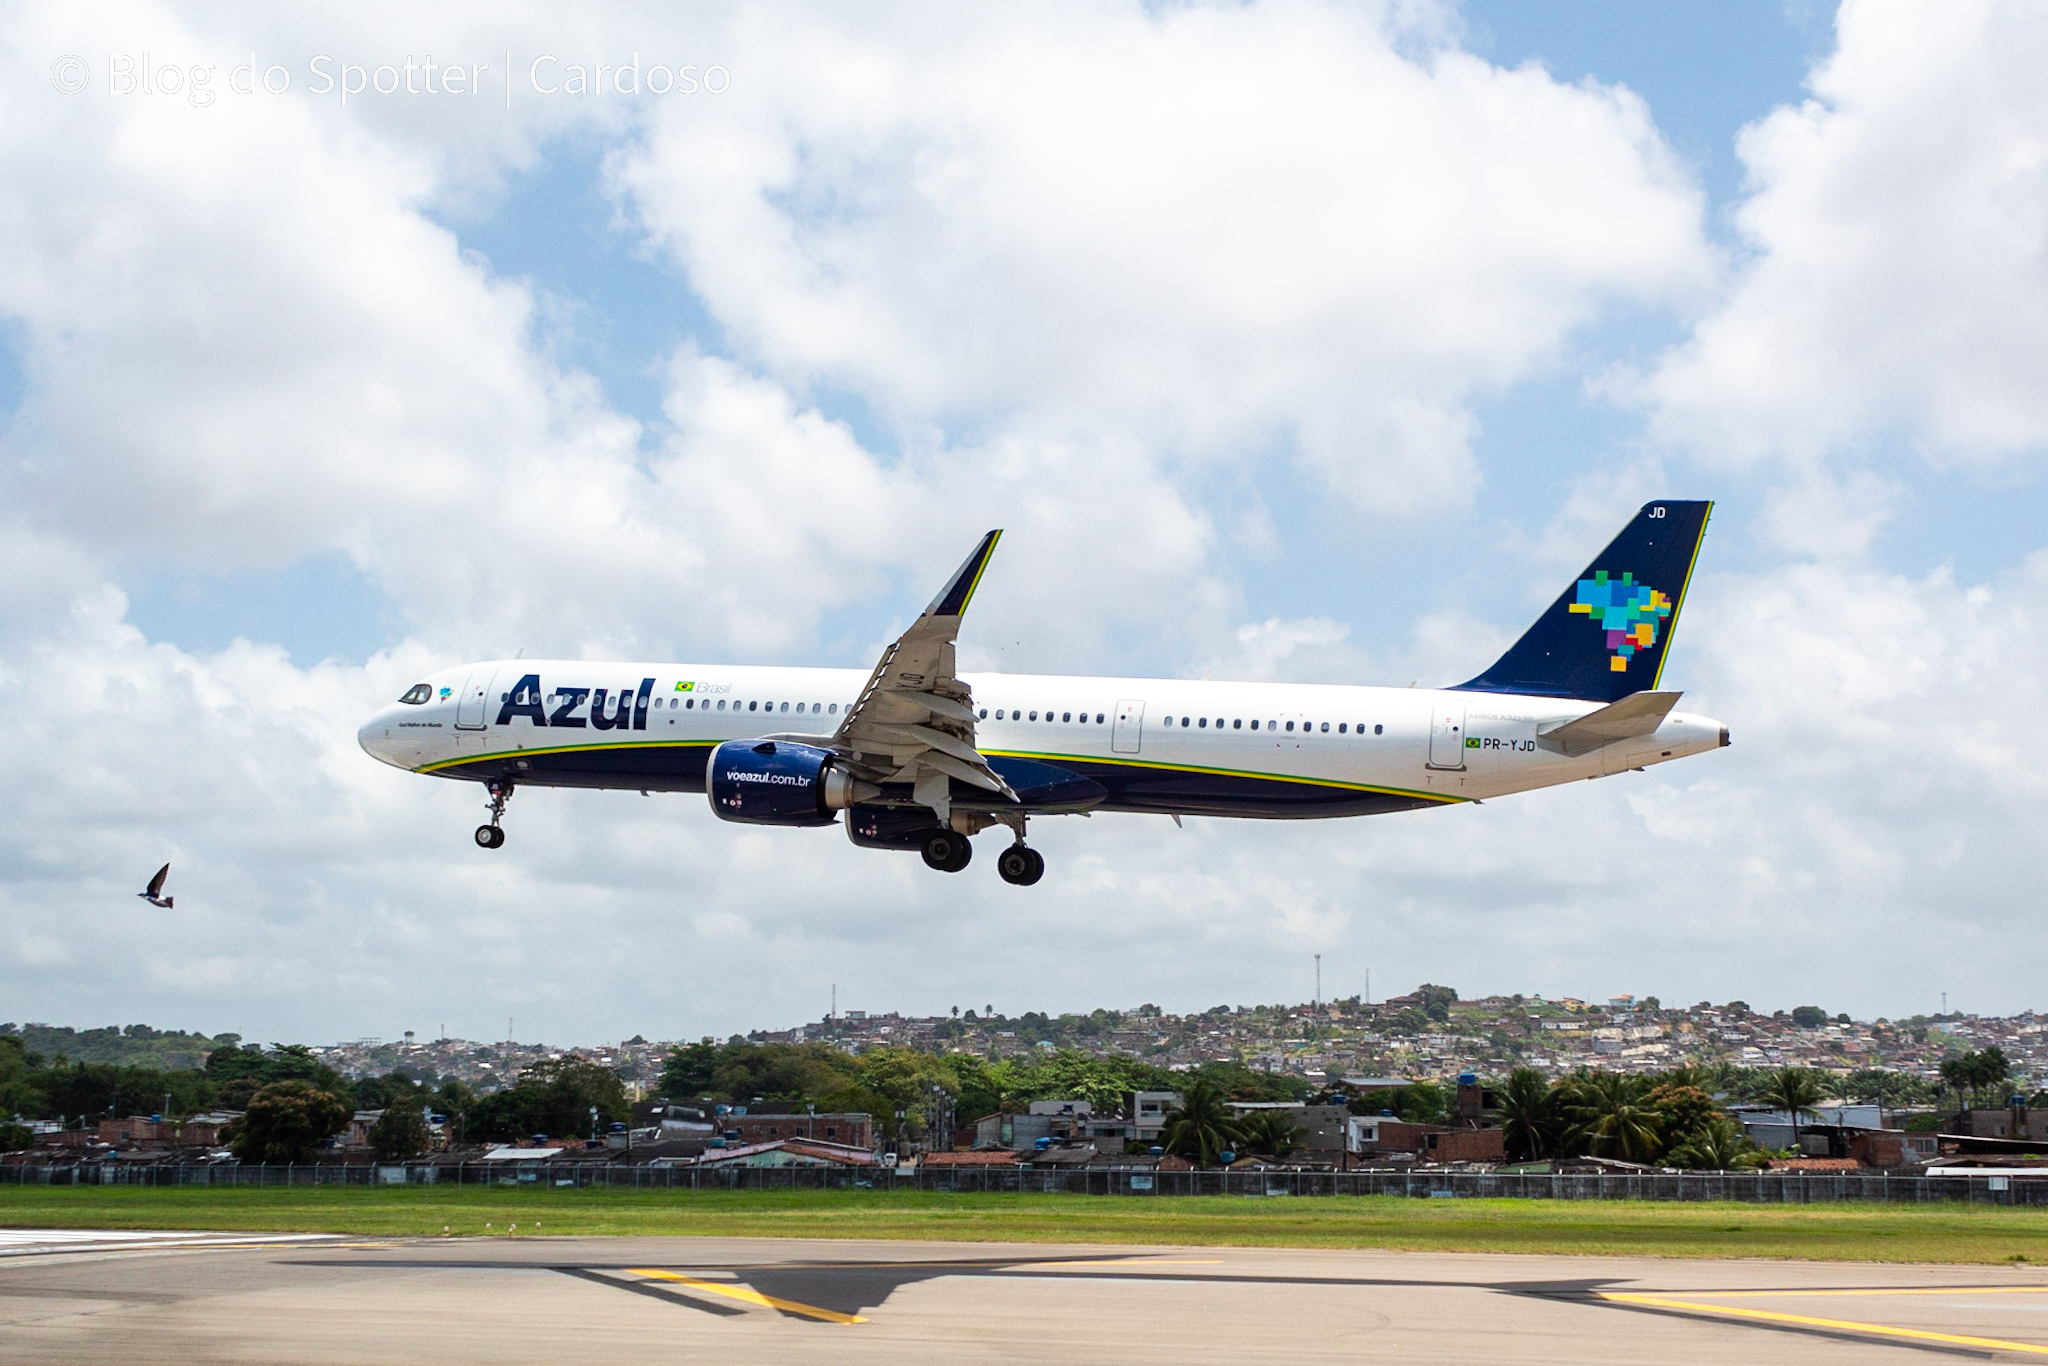 PR-YJD - Airbus A321 NEO - AZUL Linhas Aéreas